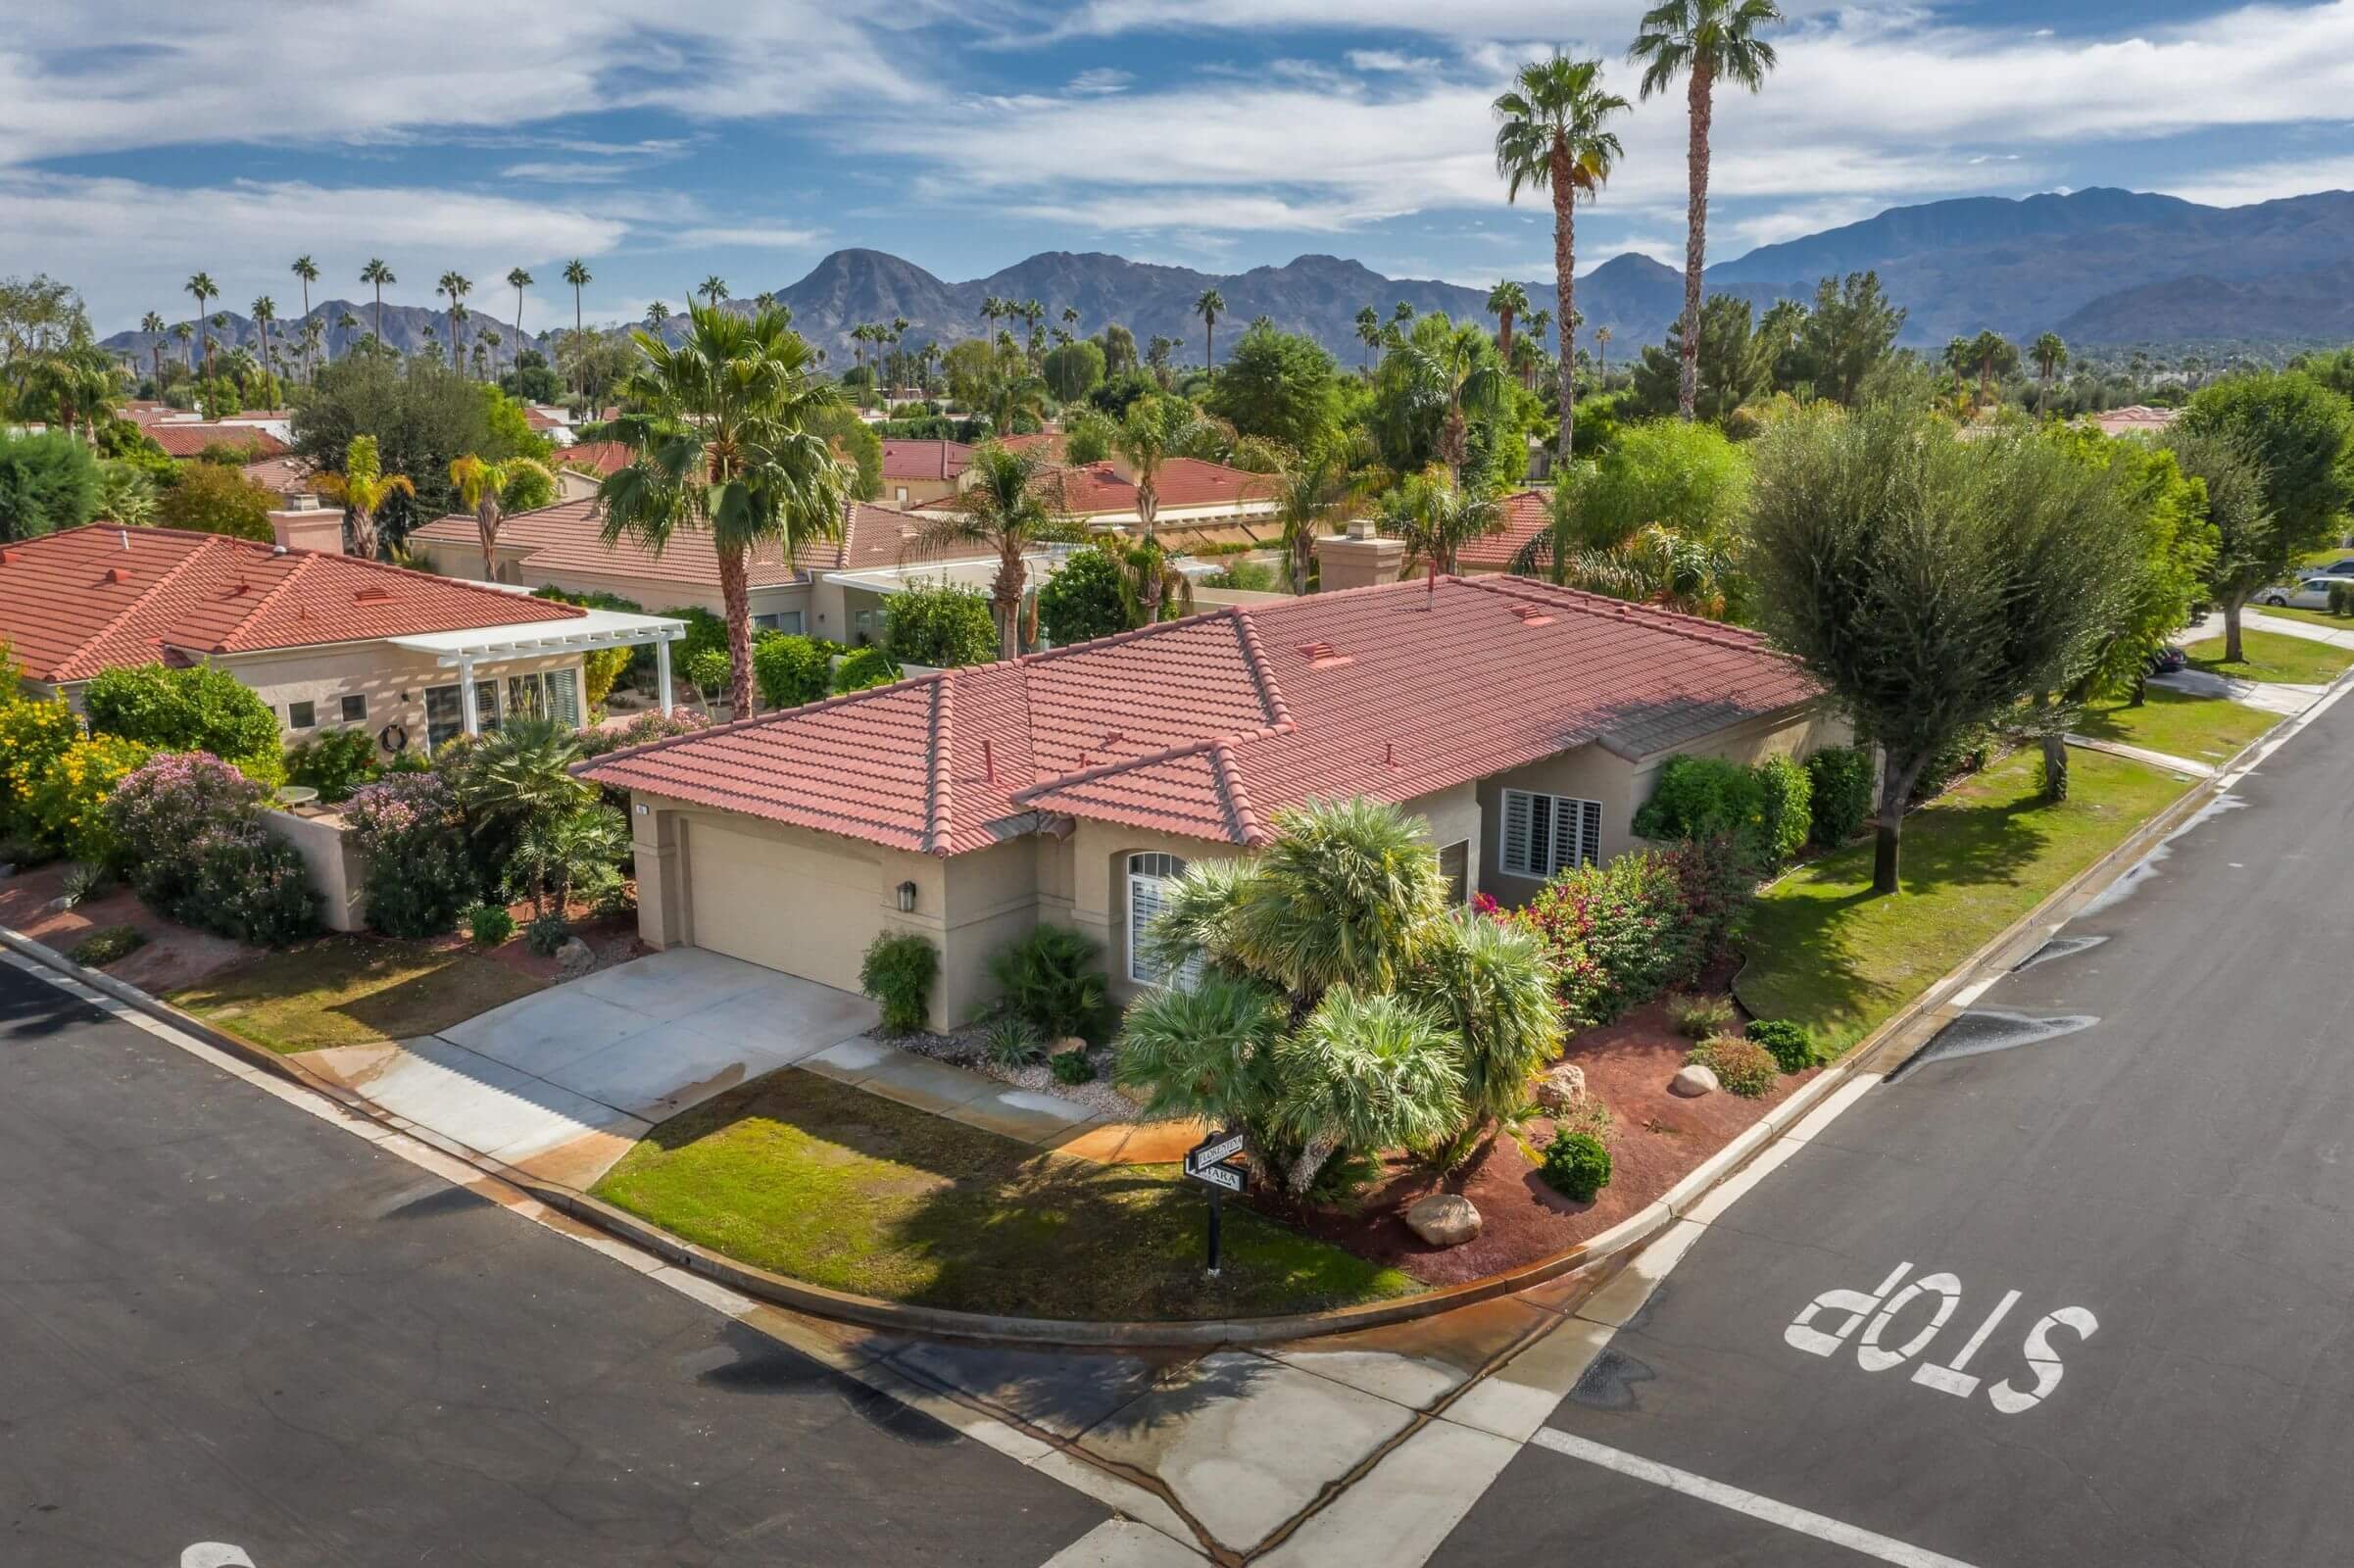 The Estates at Rancho Mirage Views